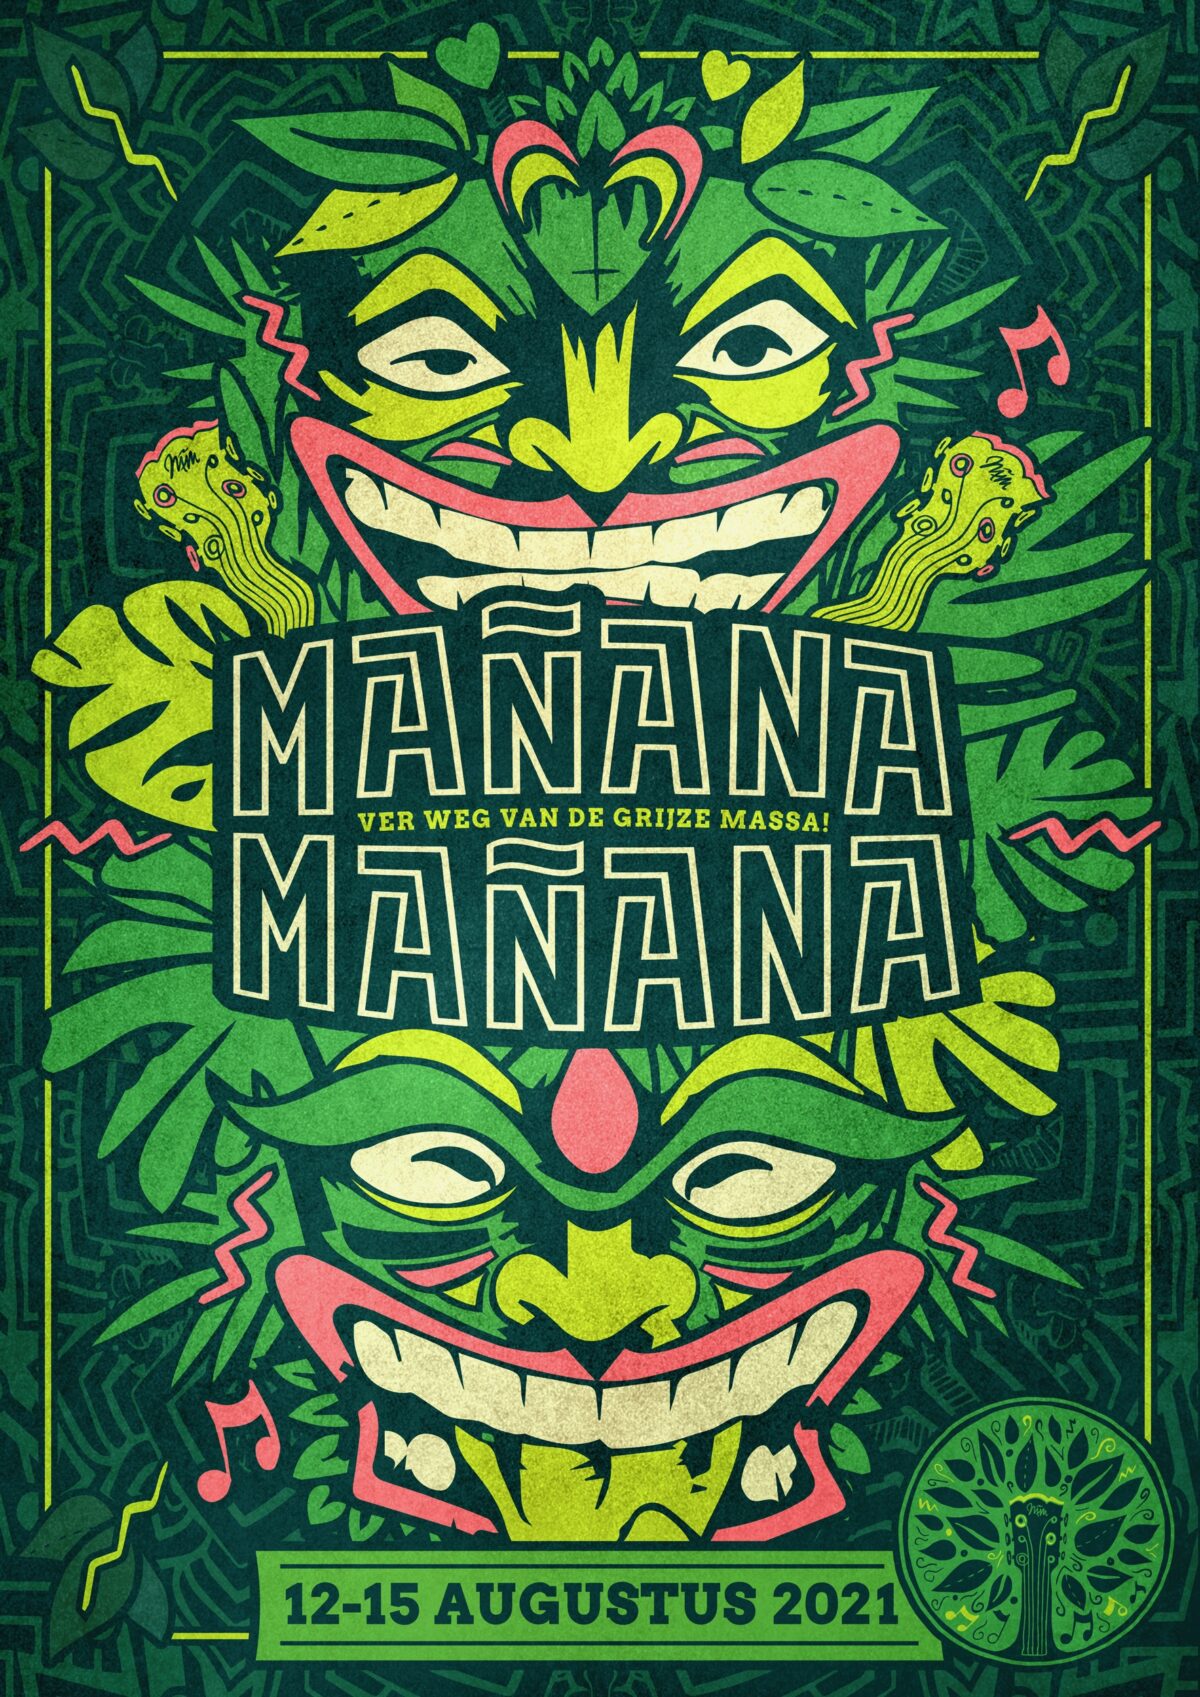 Manana Manana poster flyer